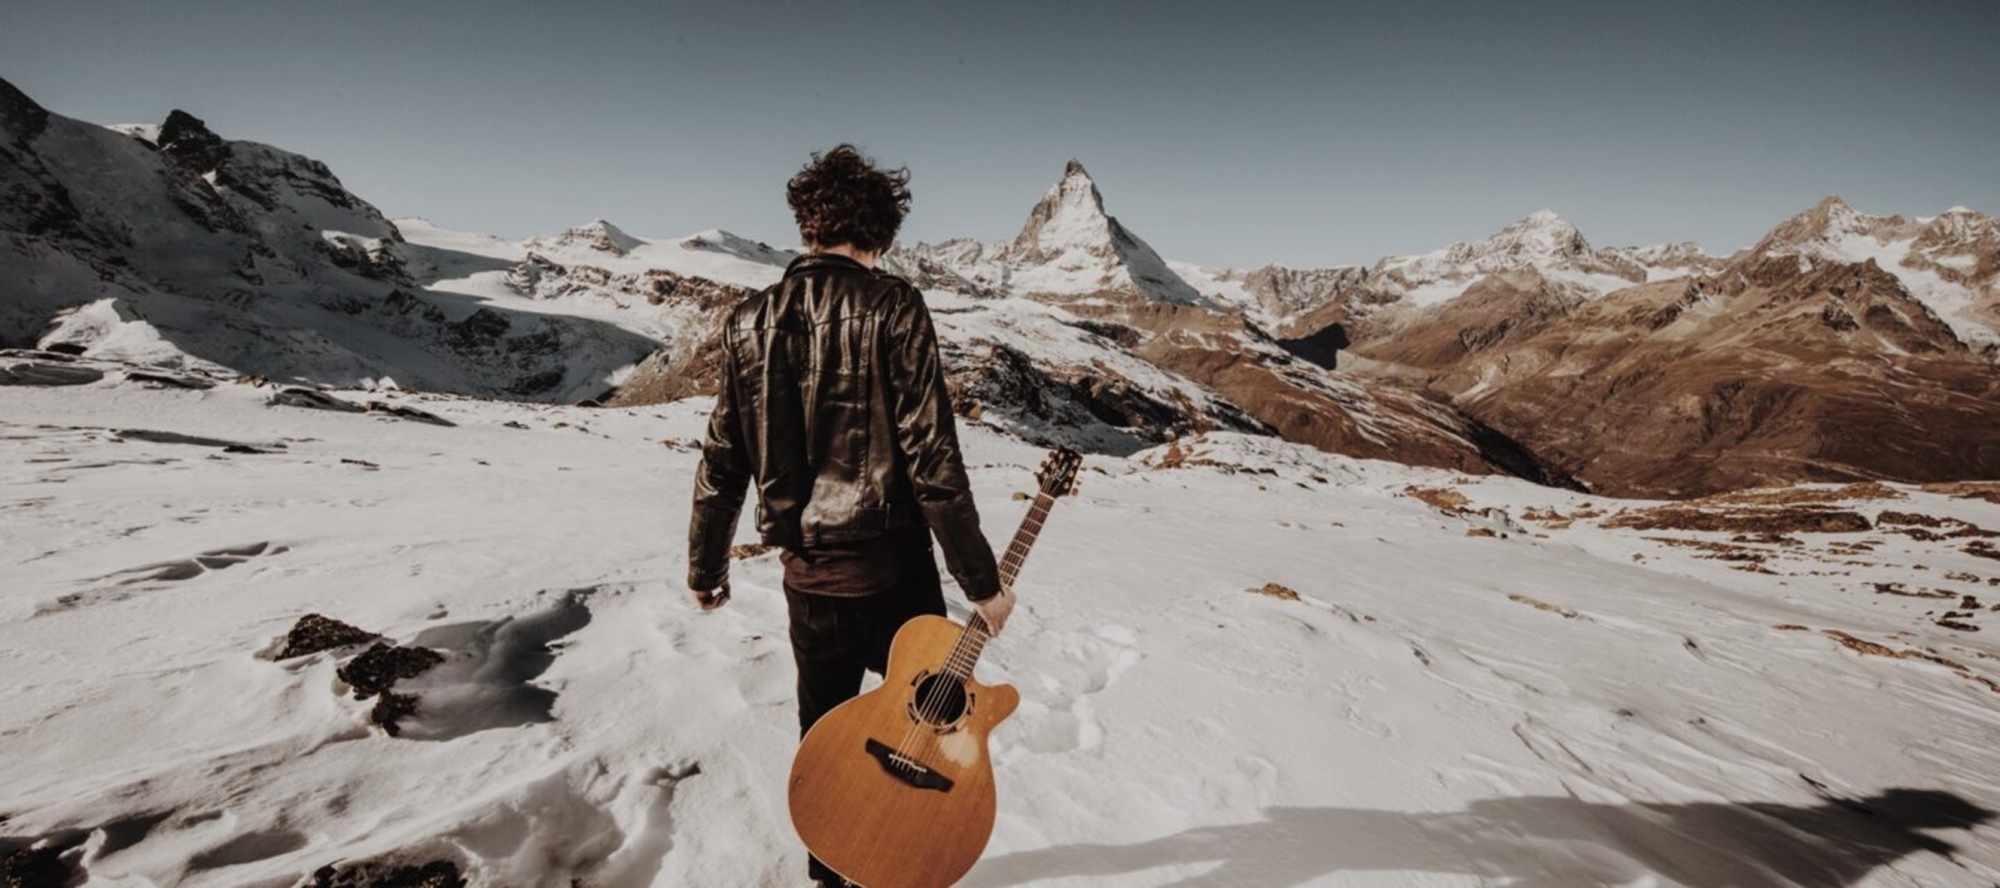 En avril, Zermatt redeviendra le théâtre d'un événement musical exceptionnel avec son festival unplugged.